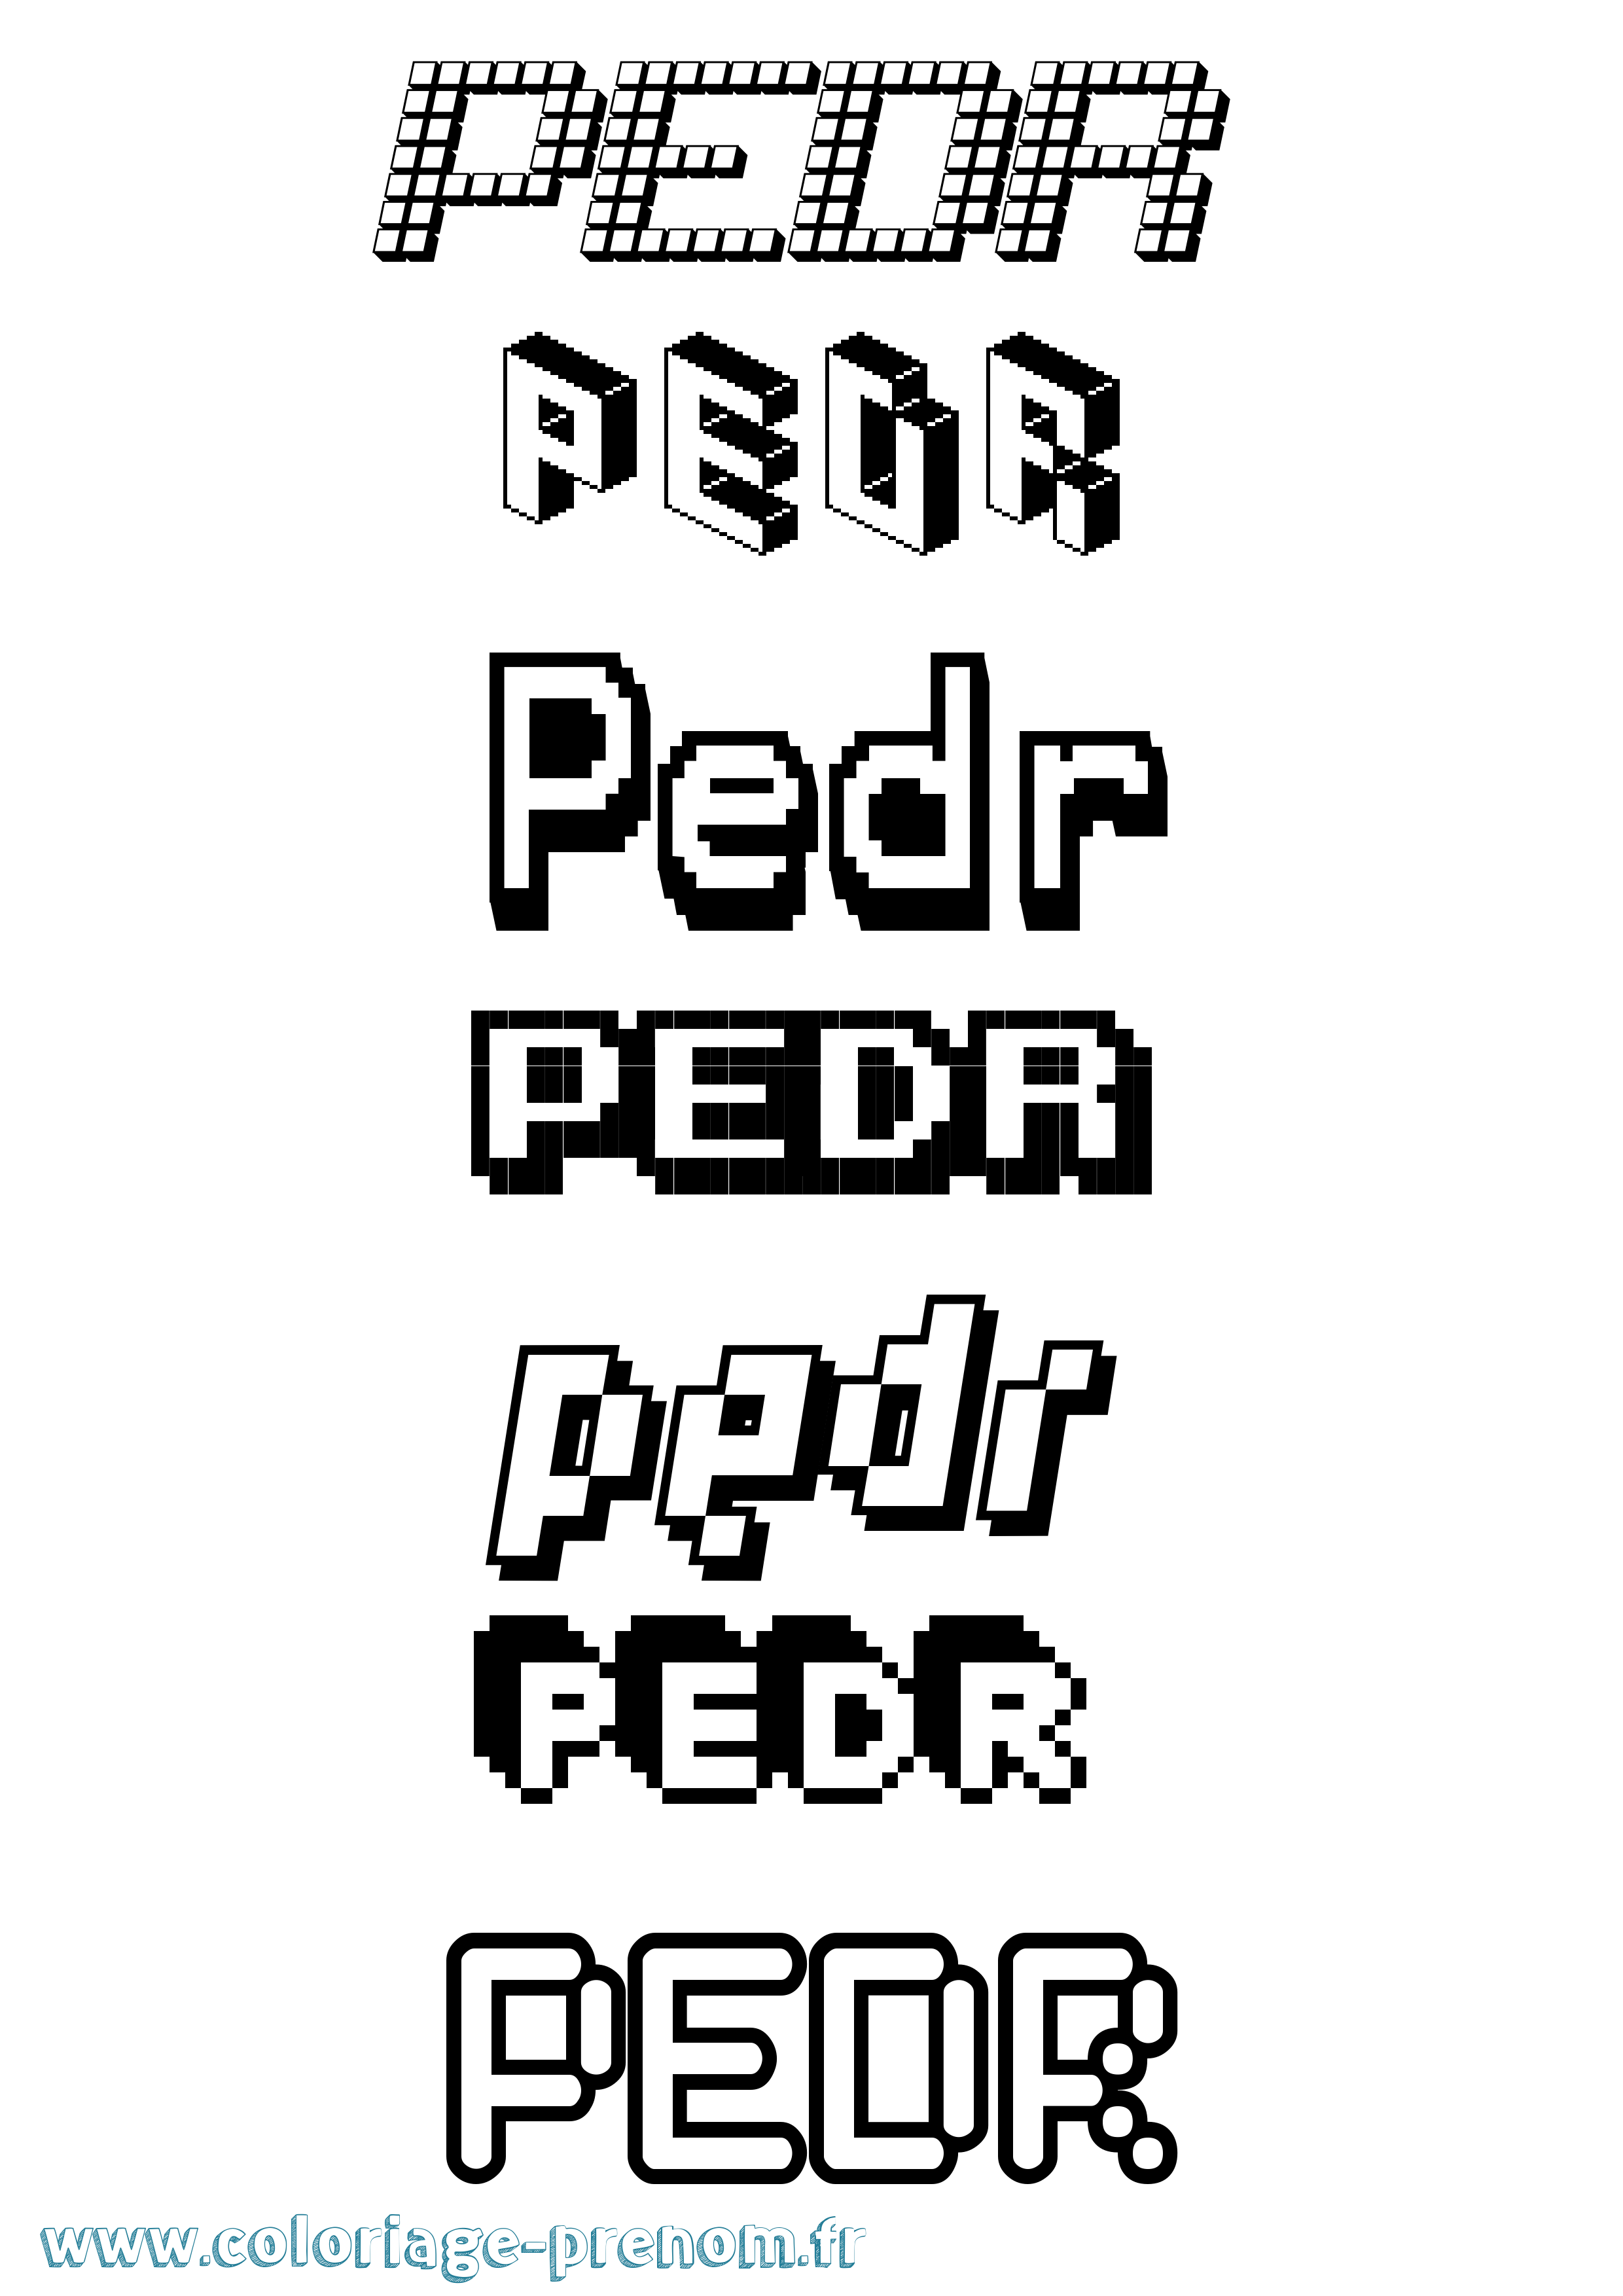 Coloriage prénom Pedr Pixel